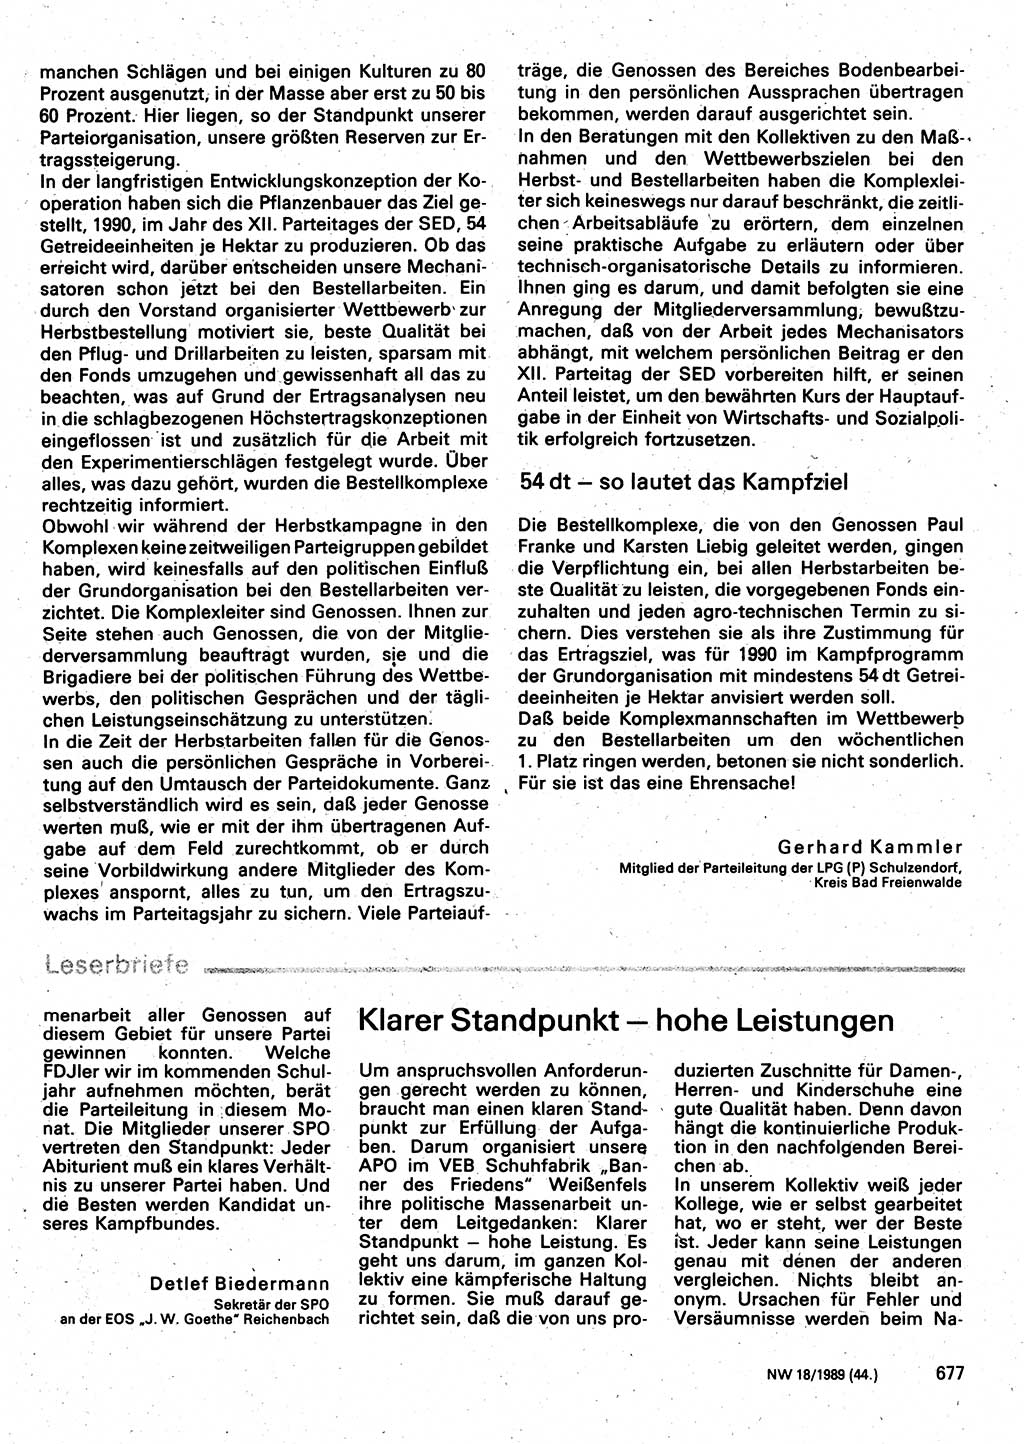 Neuer Weg (NW), Organ des Zentralkomitees (ZK) der SED (Sozialistische Einheitspartei Deutschlands) für Fragen des Parteilebens, 44. Jahrgang [Deutsche Demokratische Republik (DDR)] 1989, Seite 677 (NW ZK SED DDR 1989, S. 677)